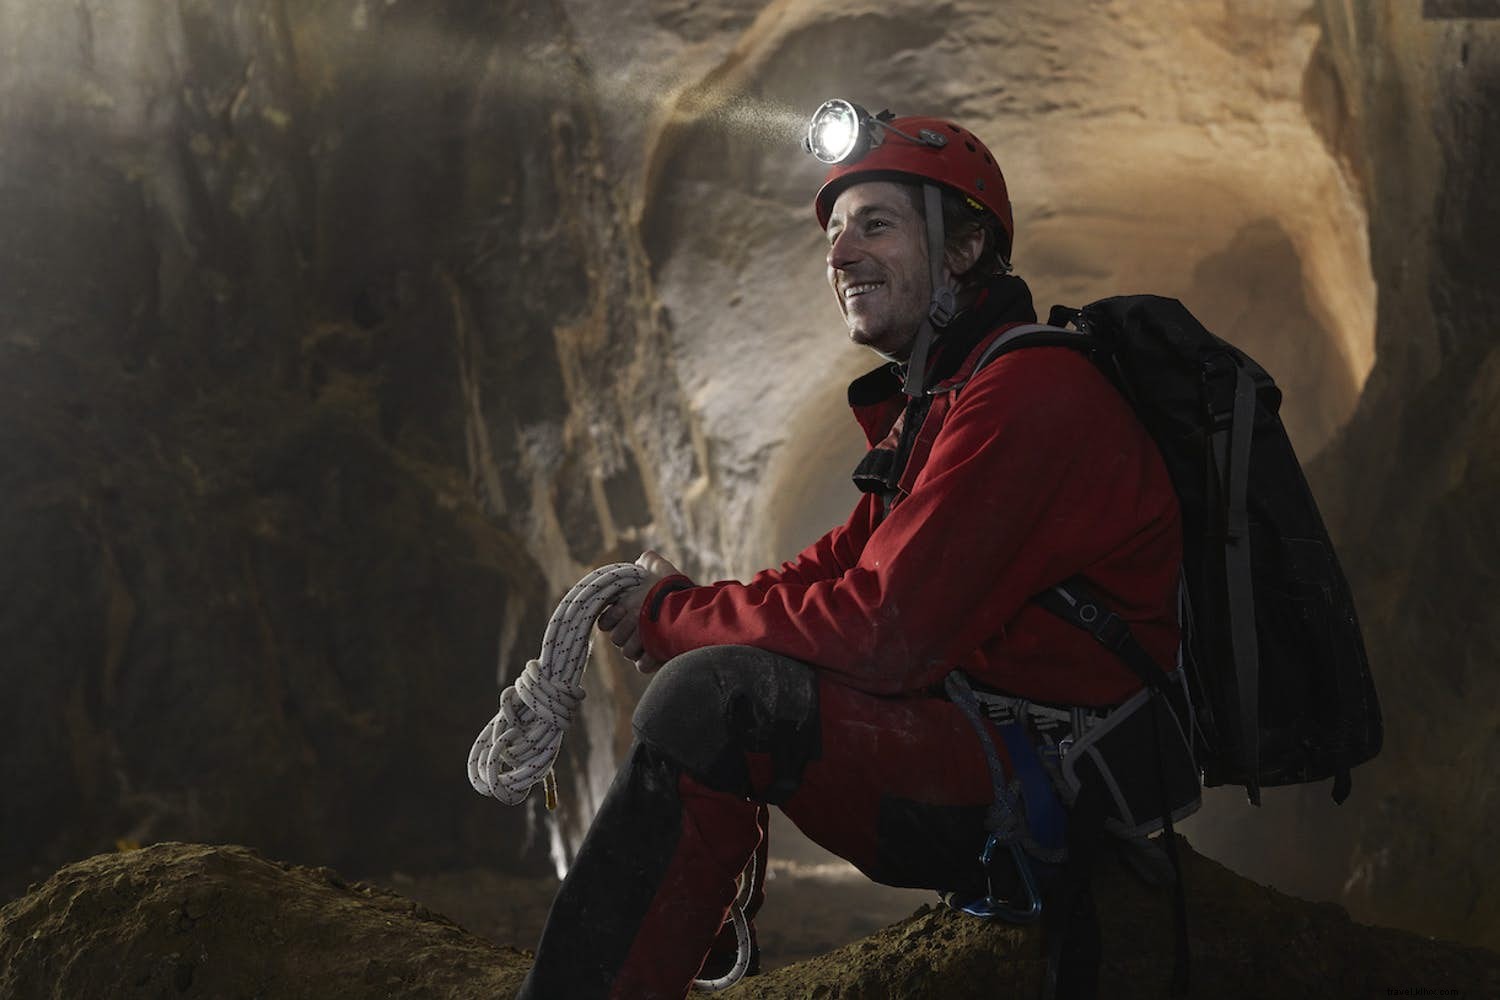 Incontra un viaggiatore:Robbie Shone, esploratore di grotte e fotografo 